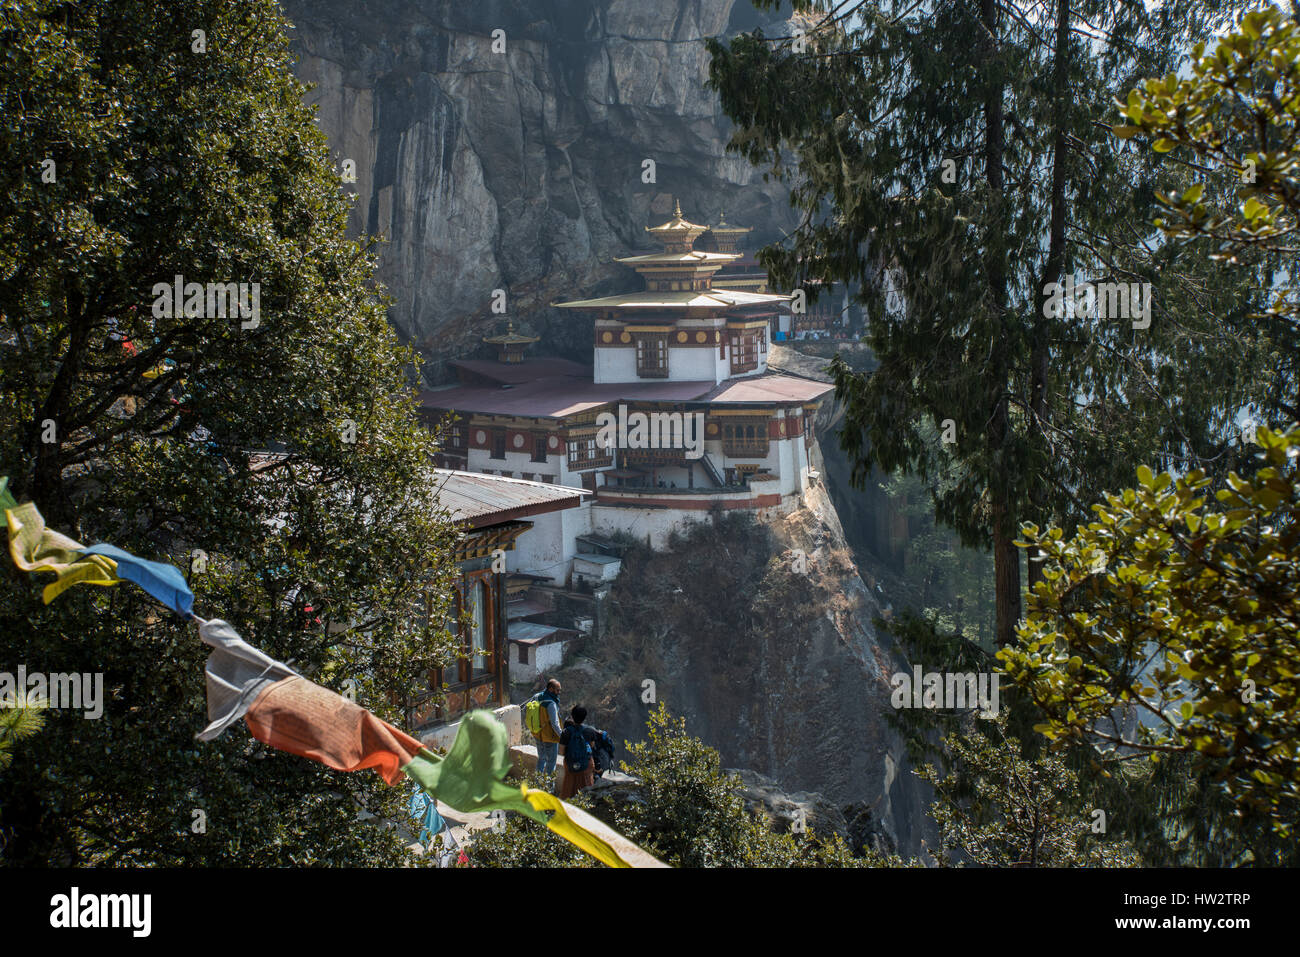 Bhutan, Paro. Tiger es Nest (aka Paro Taktsang oder Taktsang Palphug Kloster), prominente Heiliger Himalaya buddhistische Tempelanlage. Stockfoto